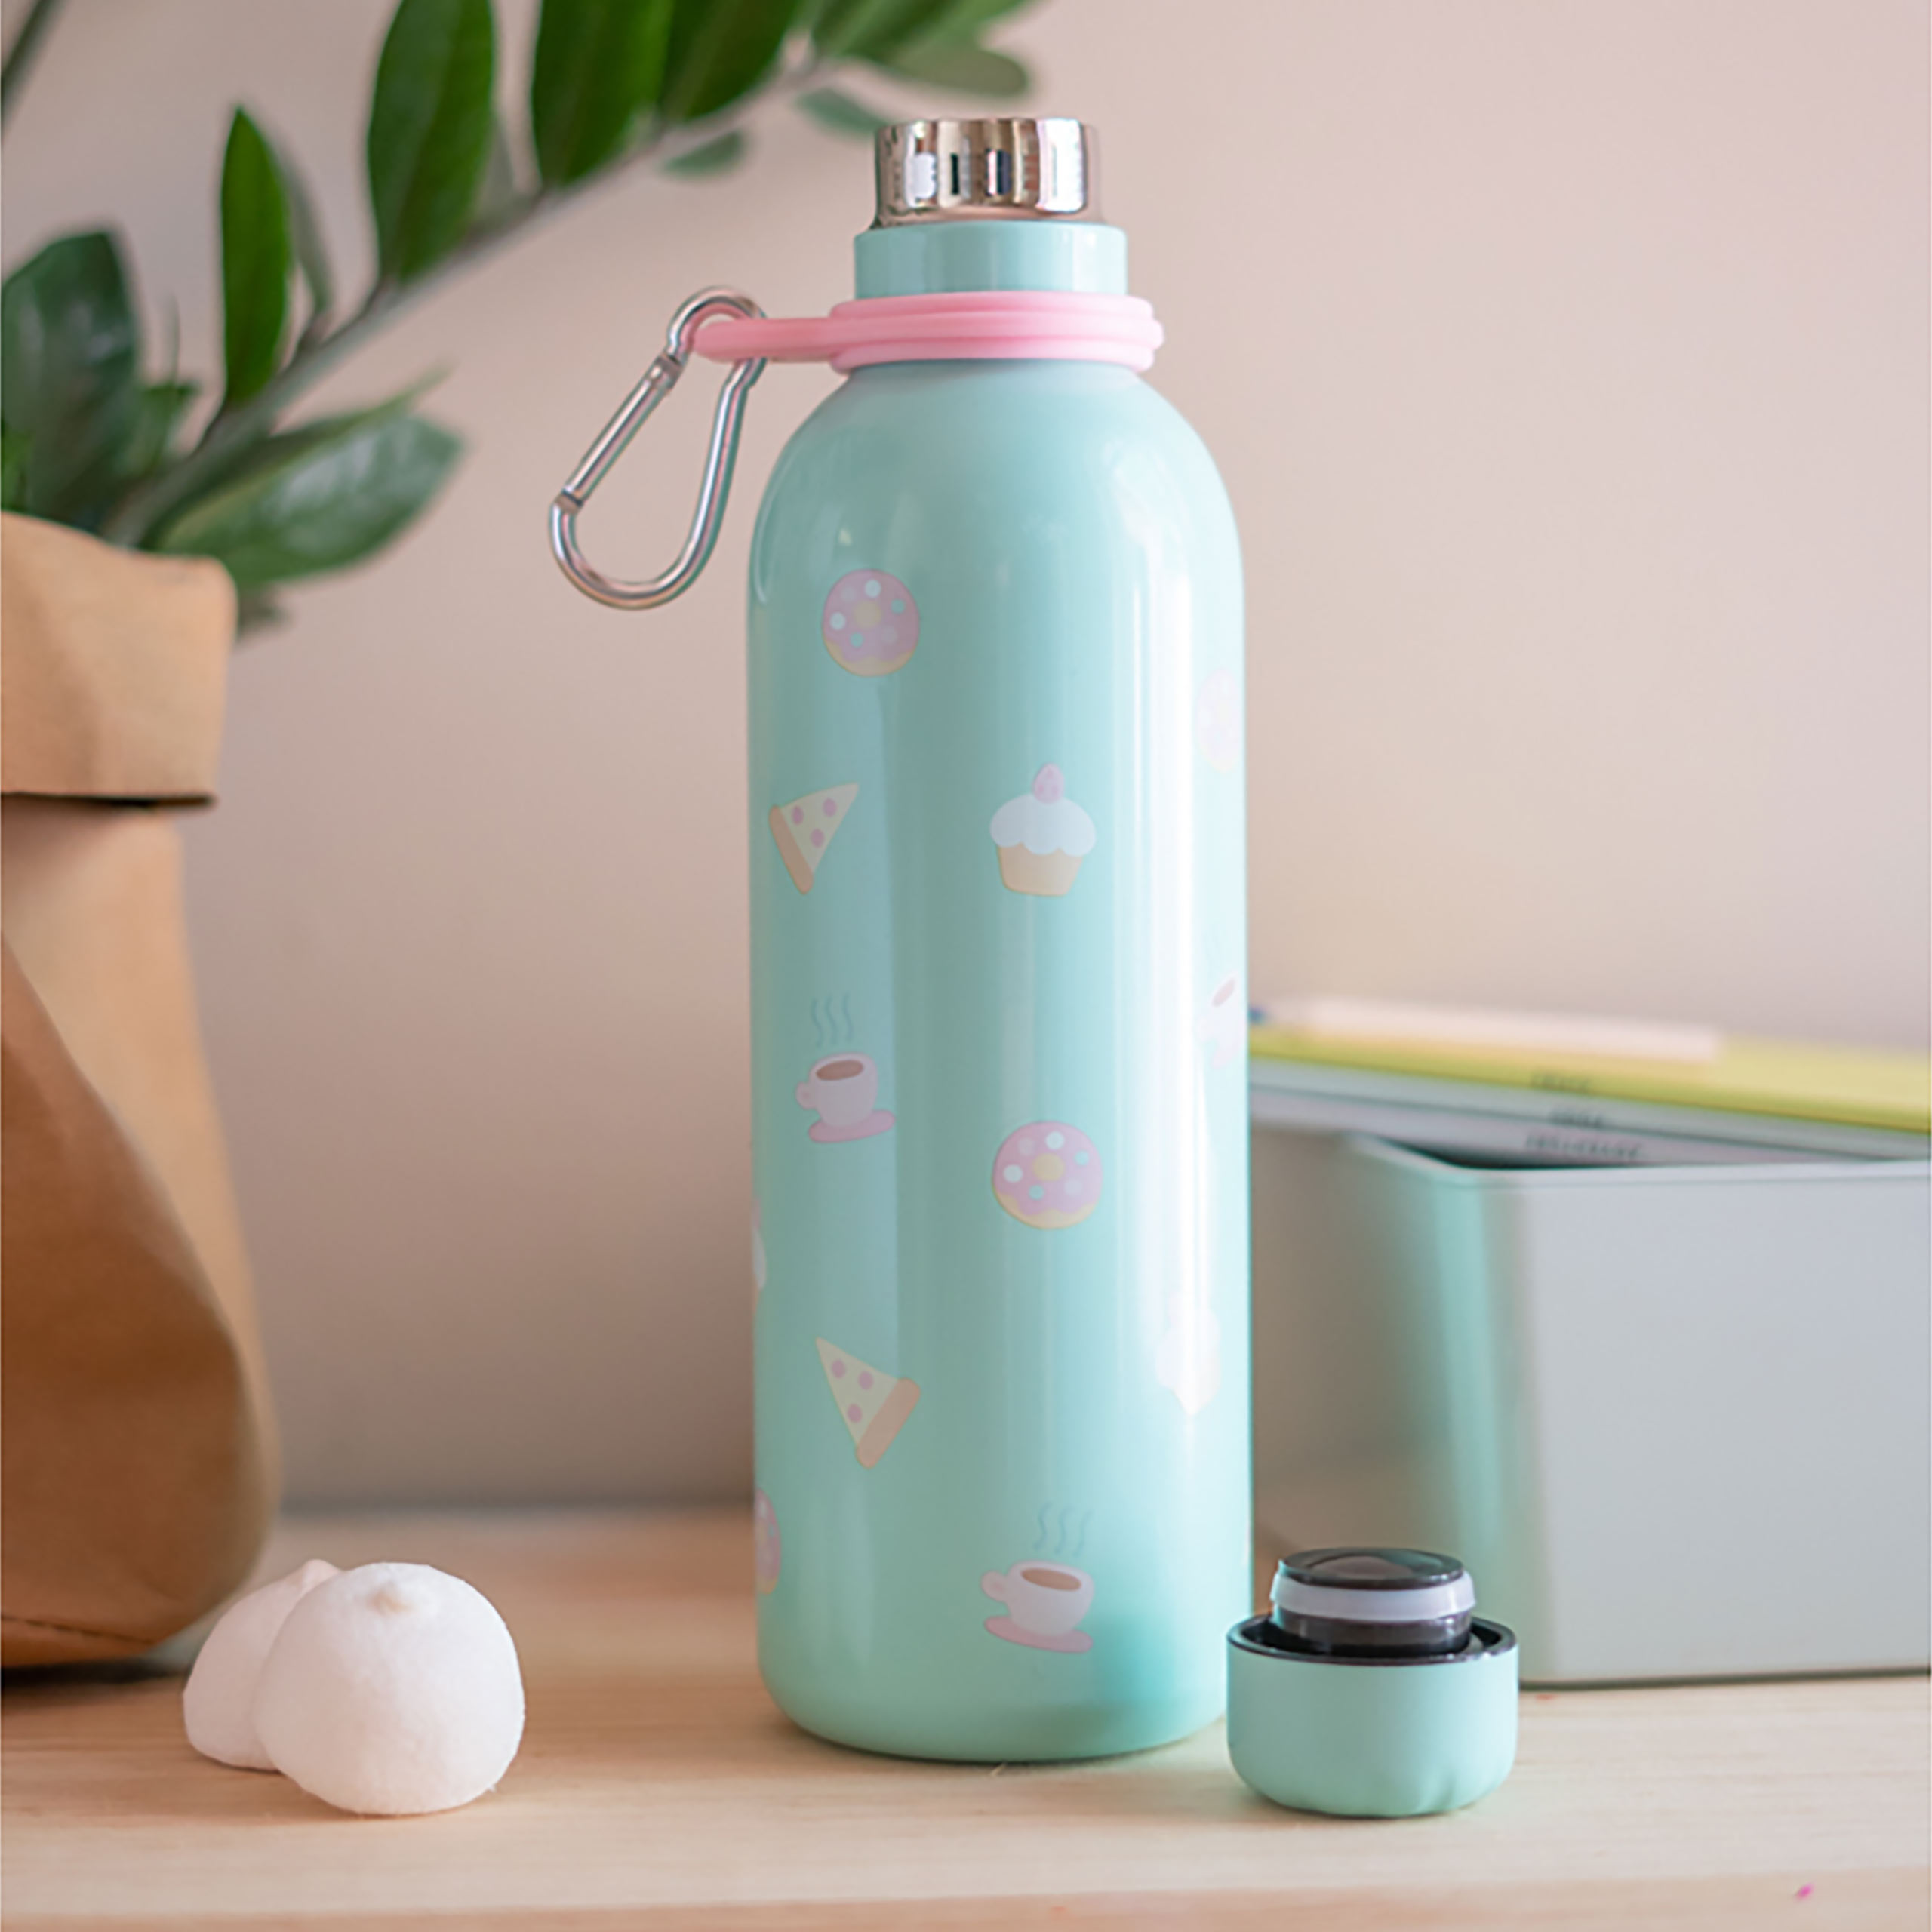 Pusheen - Stay Cool Water Bottle